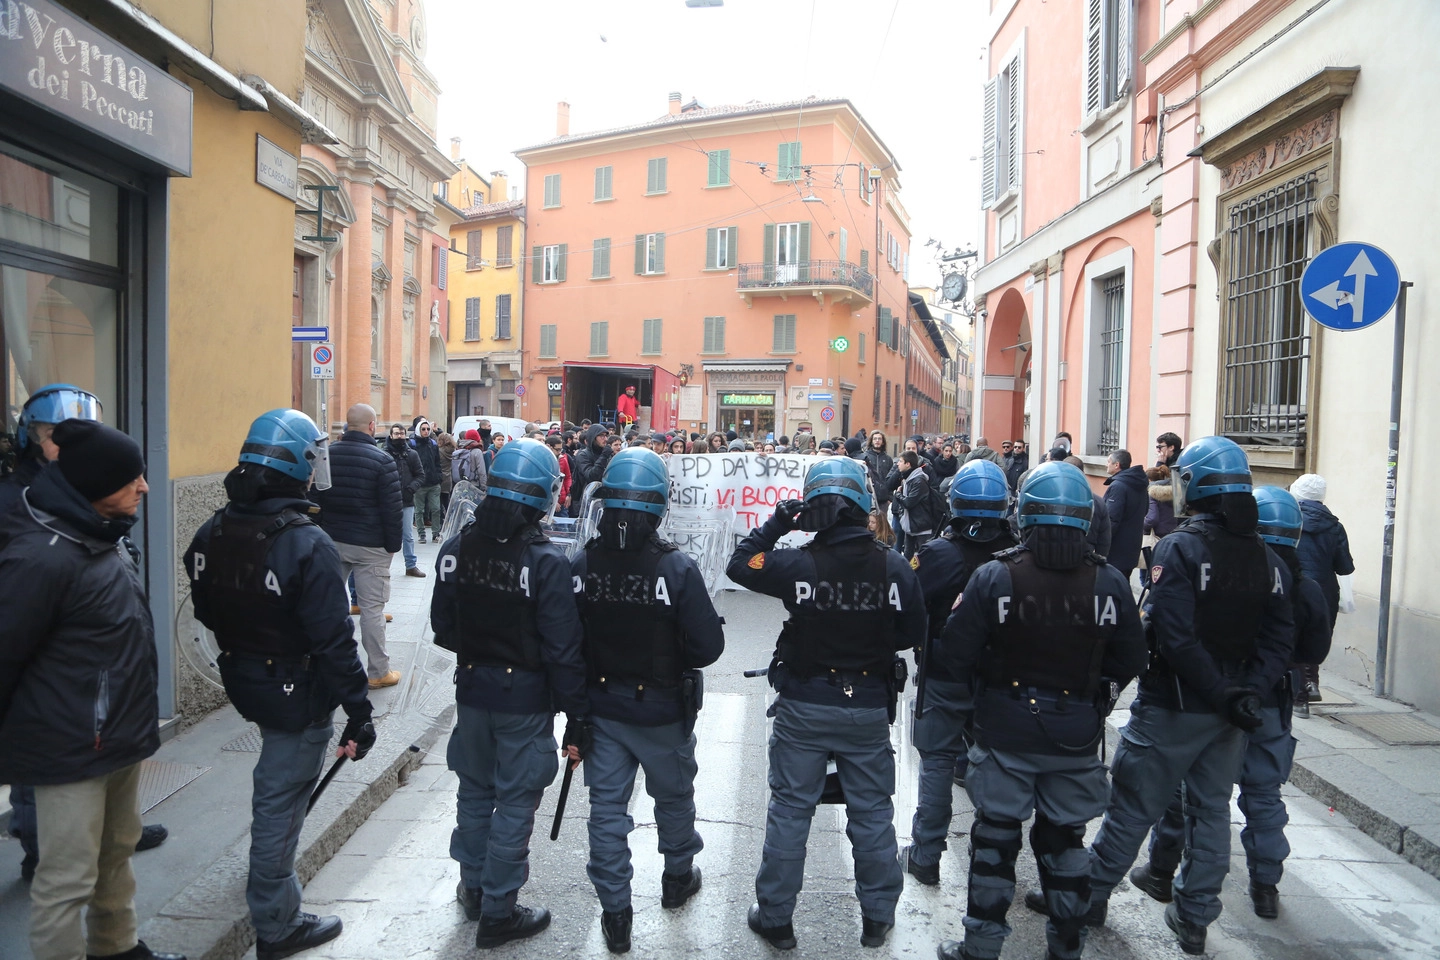 La protesta in via de' Carbonesi a Bologna (FotoSchicchi)